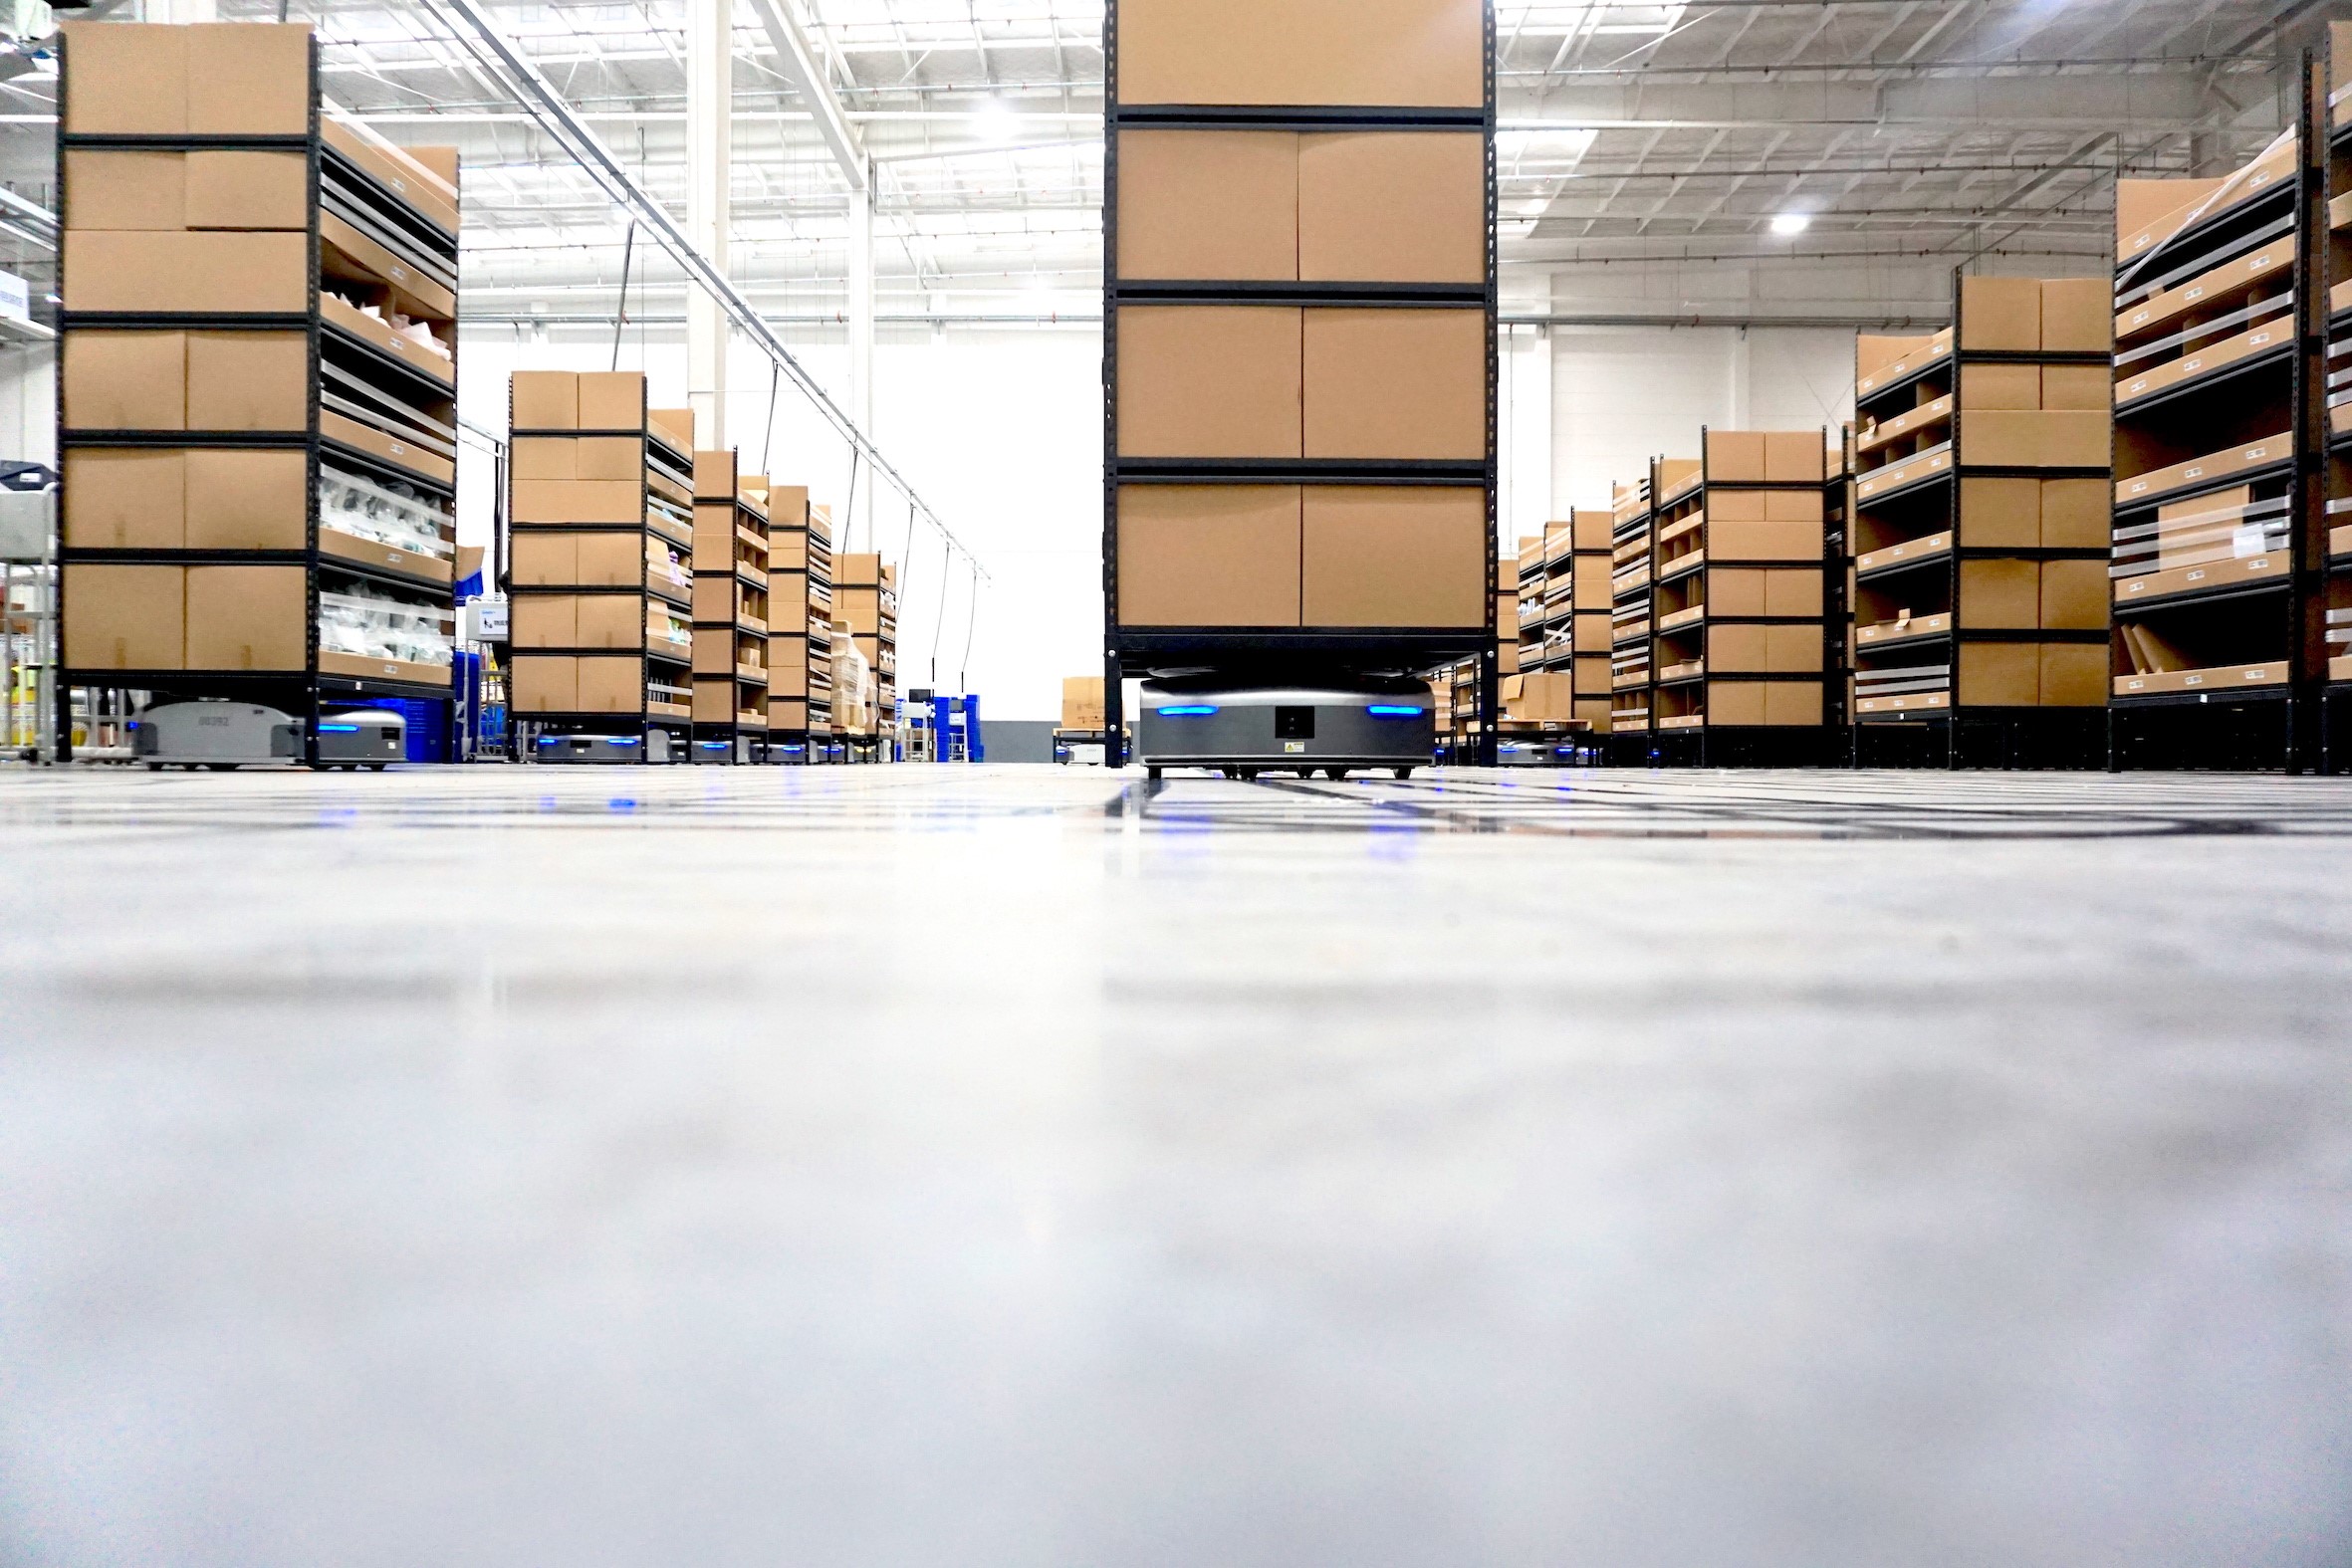 Warehouse automation image